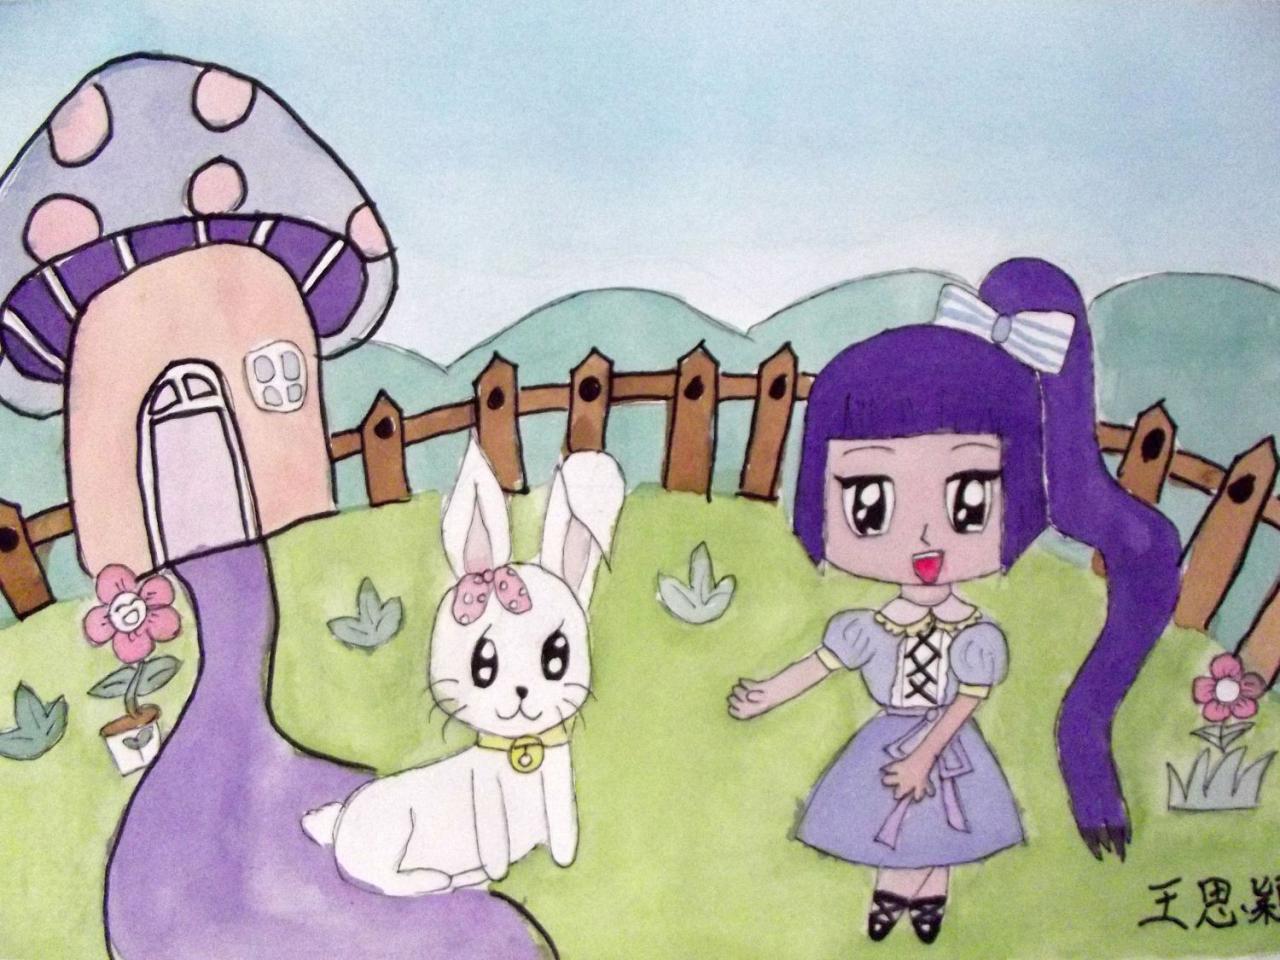 小兔子和小女孩 王思颖画